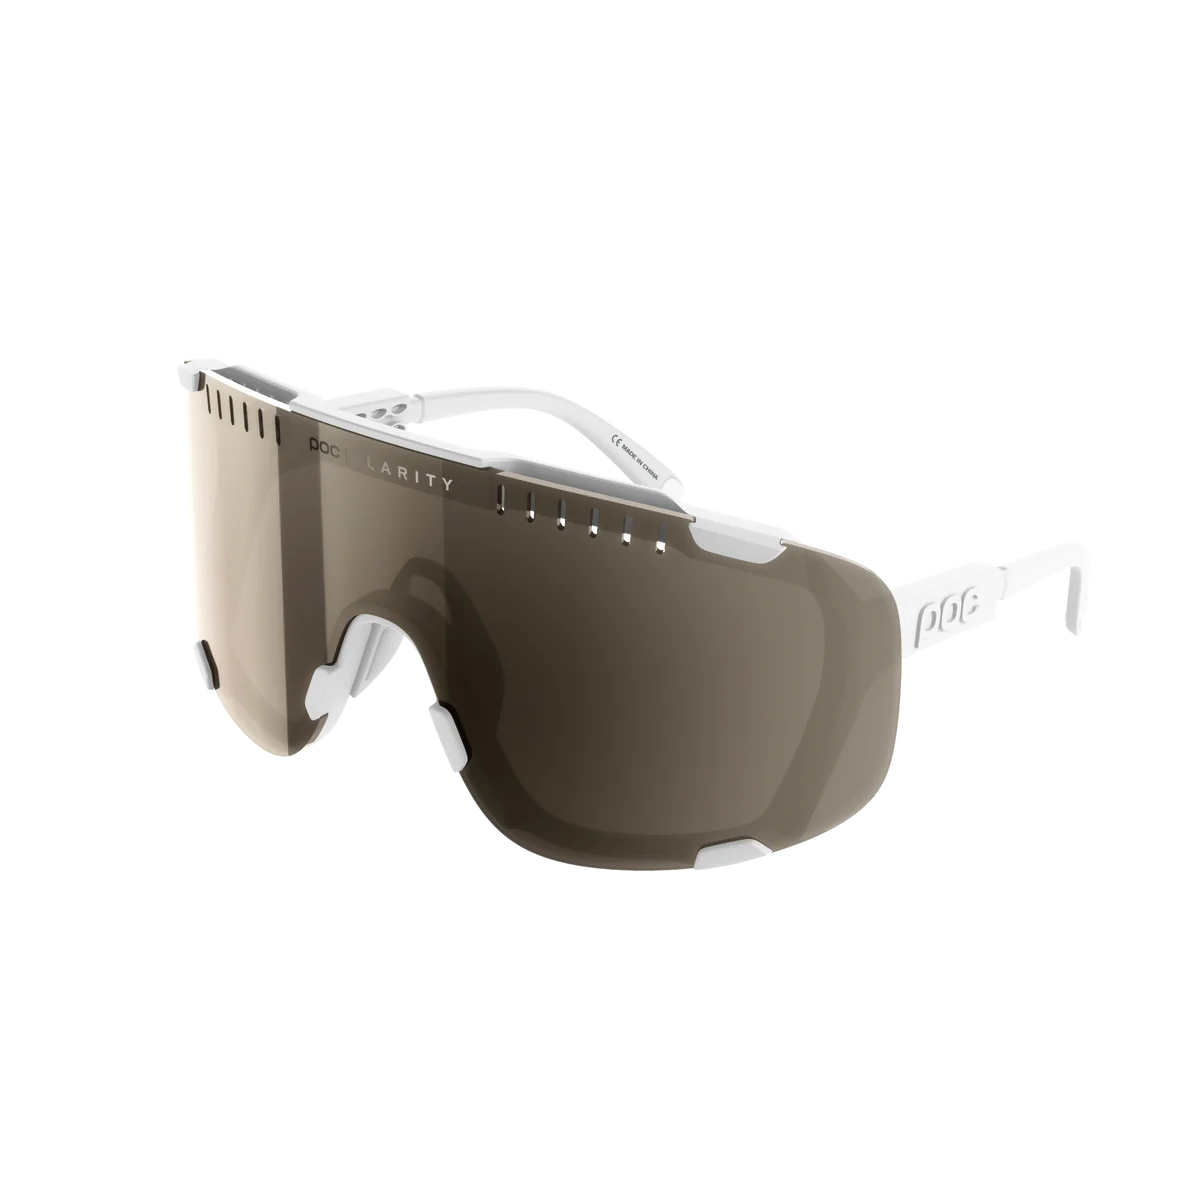 POC Devour - Hydrogen White cykelbrille